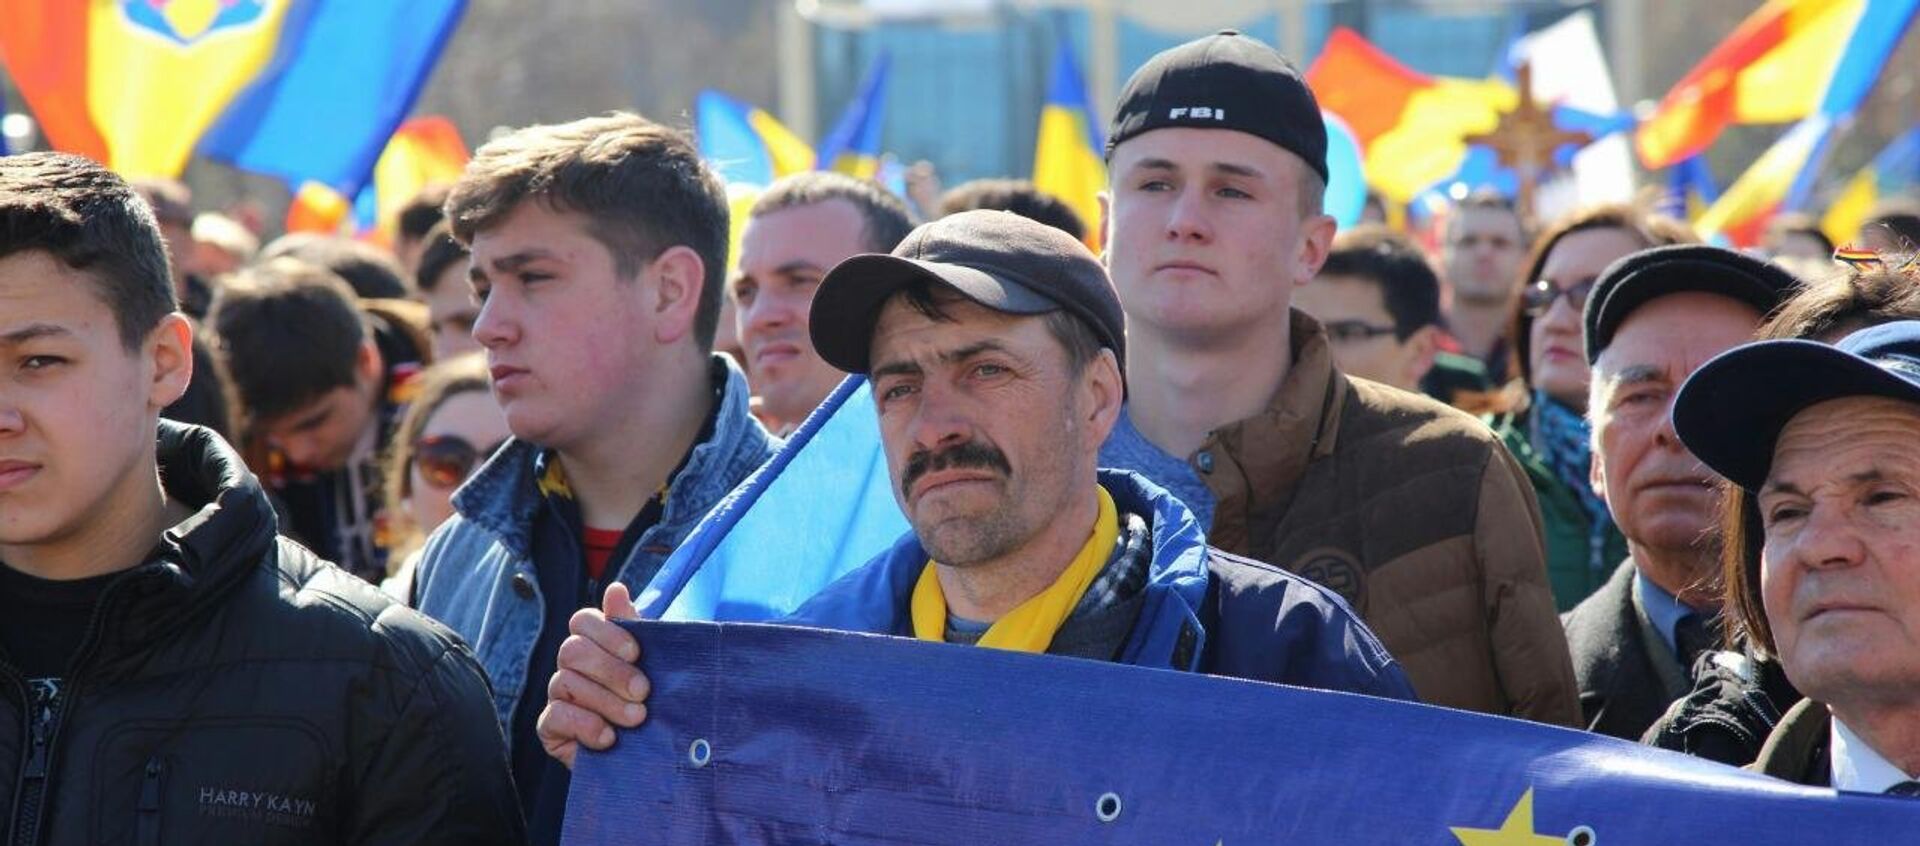 Манифестанты в поддержку унири Молдовы с Румынией - Sputnik Молдова, 1920, 27.10.2017